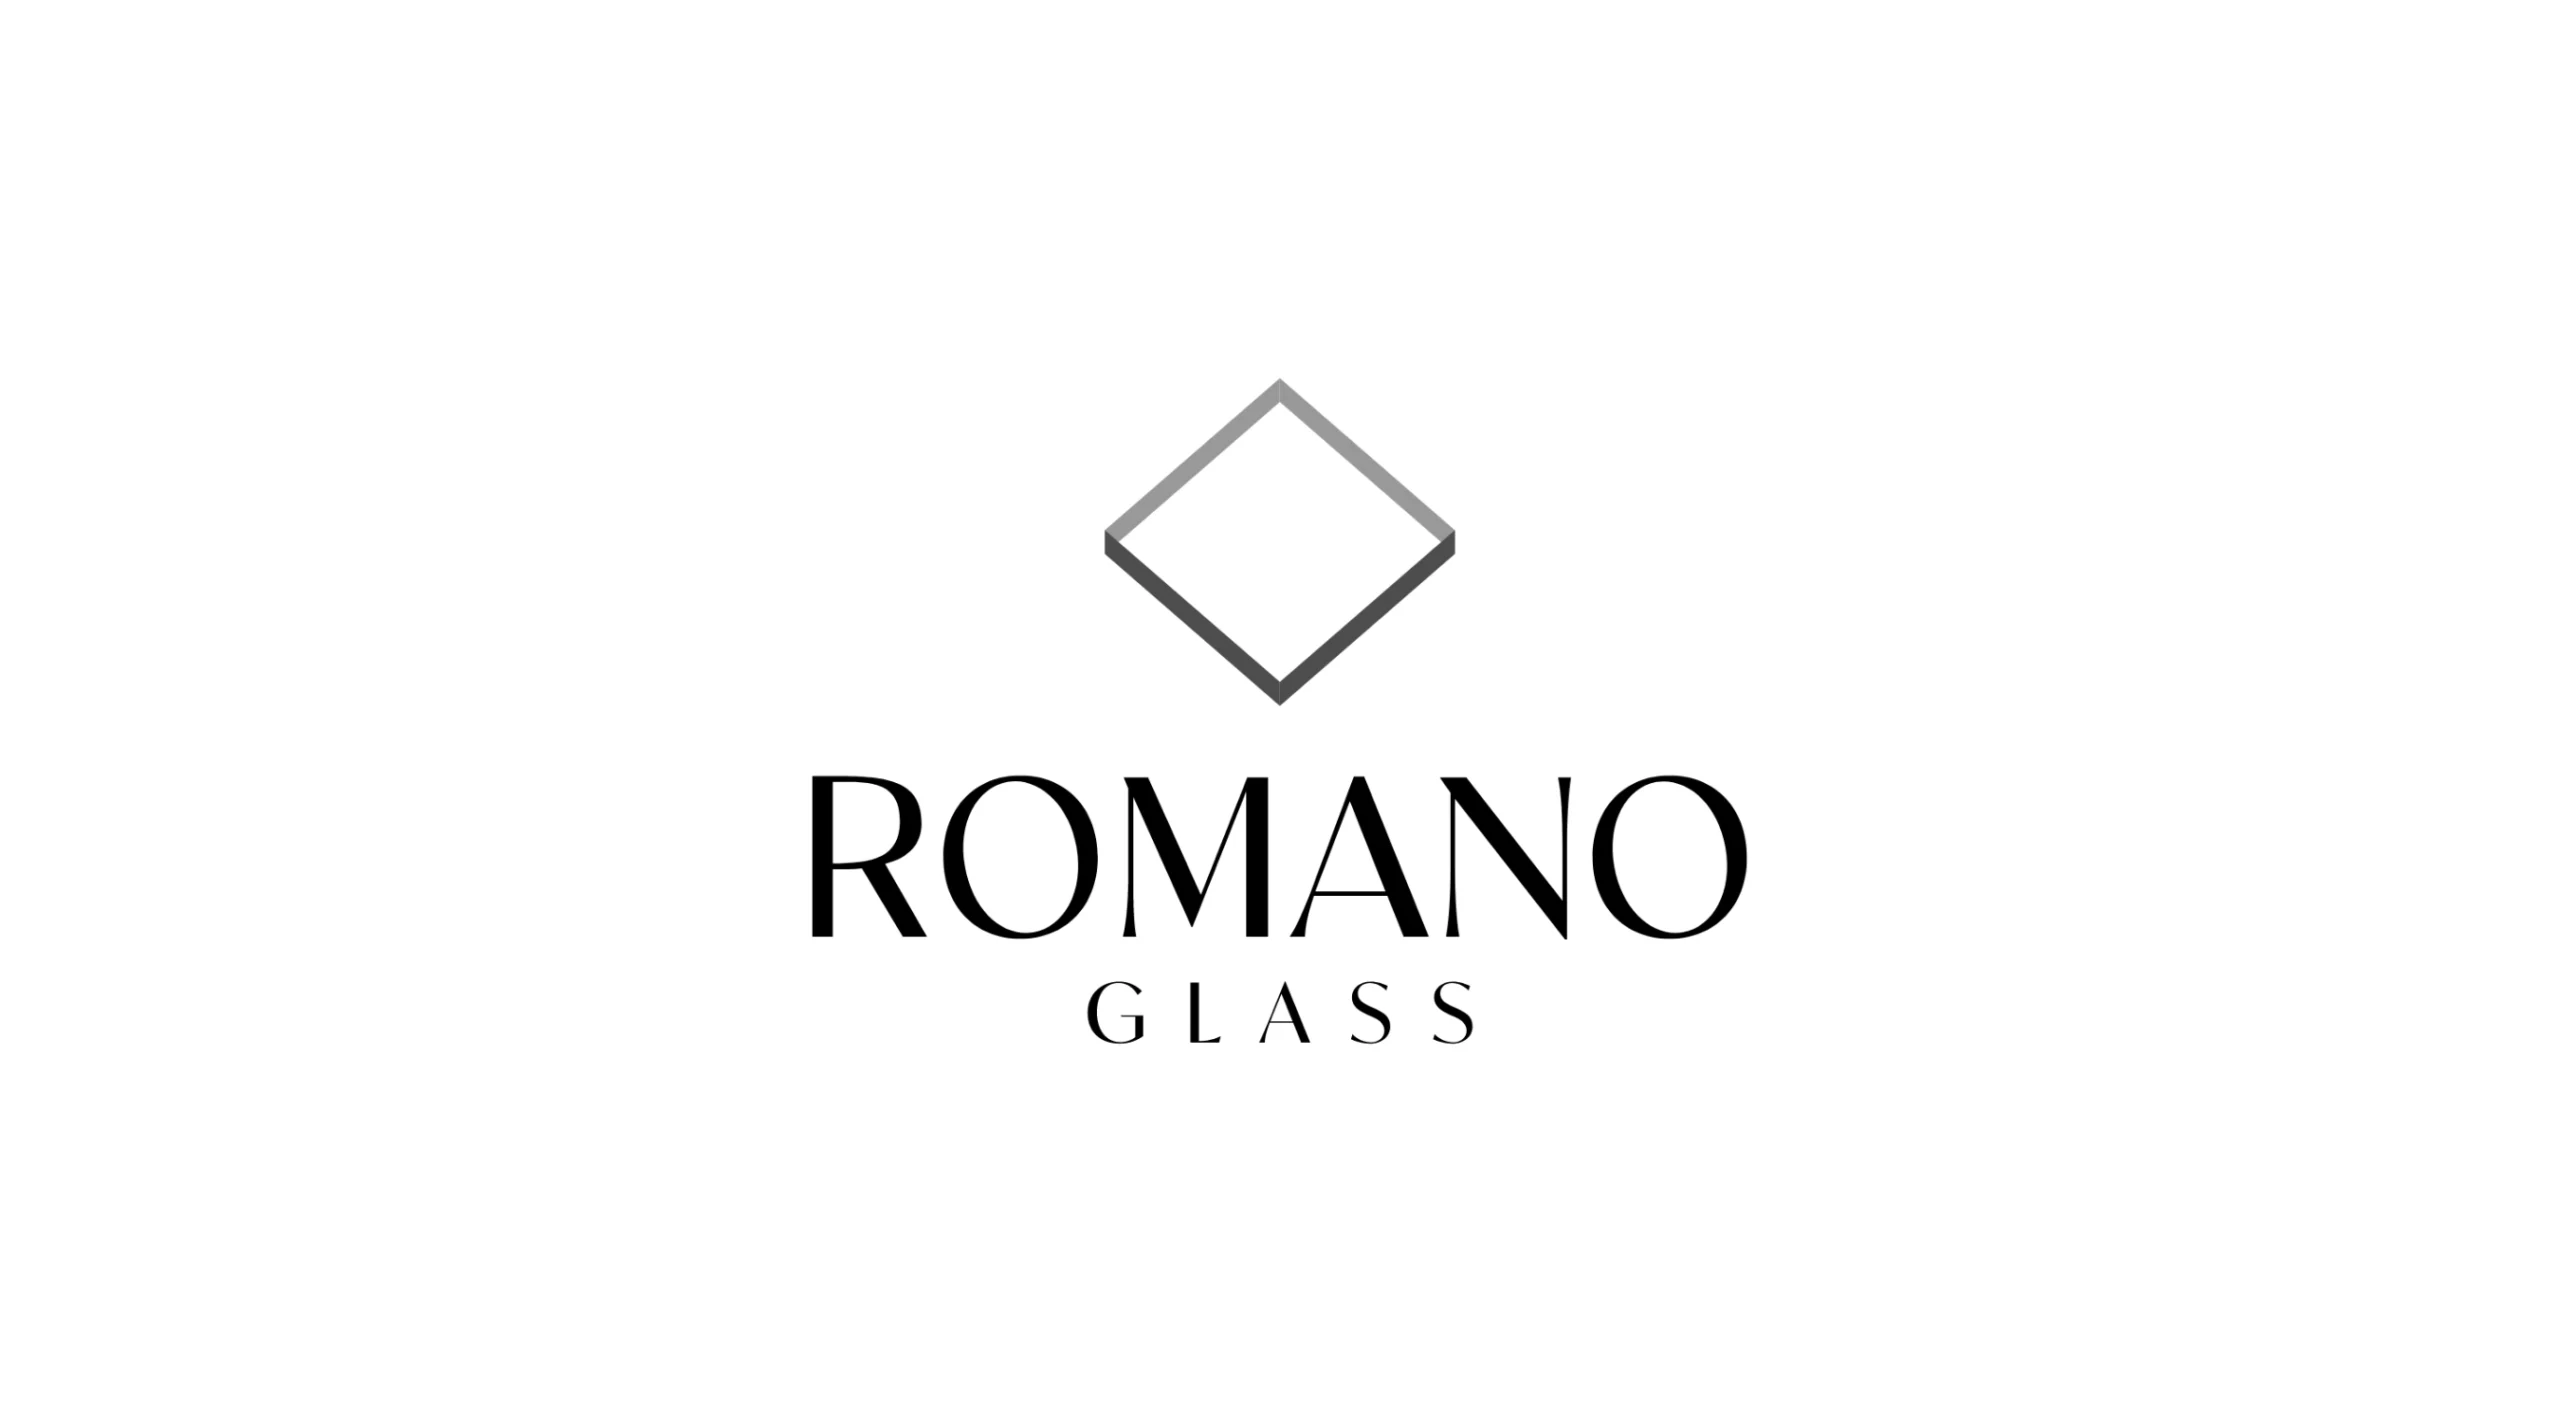 Marca completa de Romano Glass, incluyendo el símbolo y logotipo.